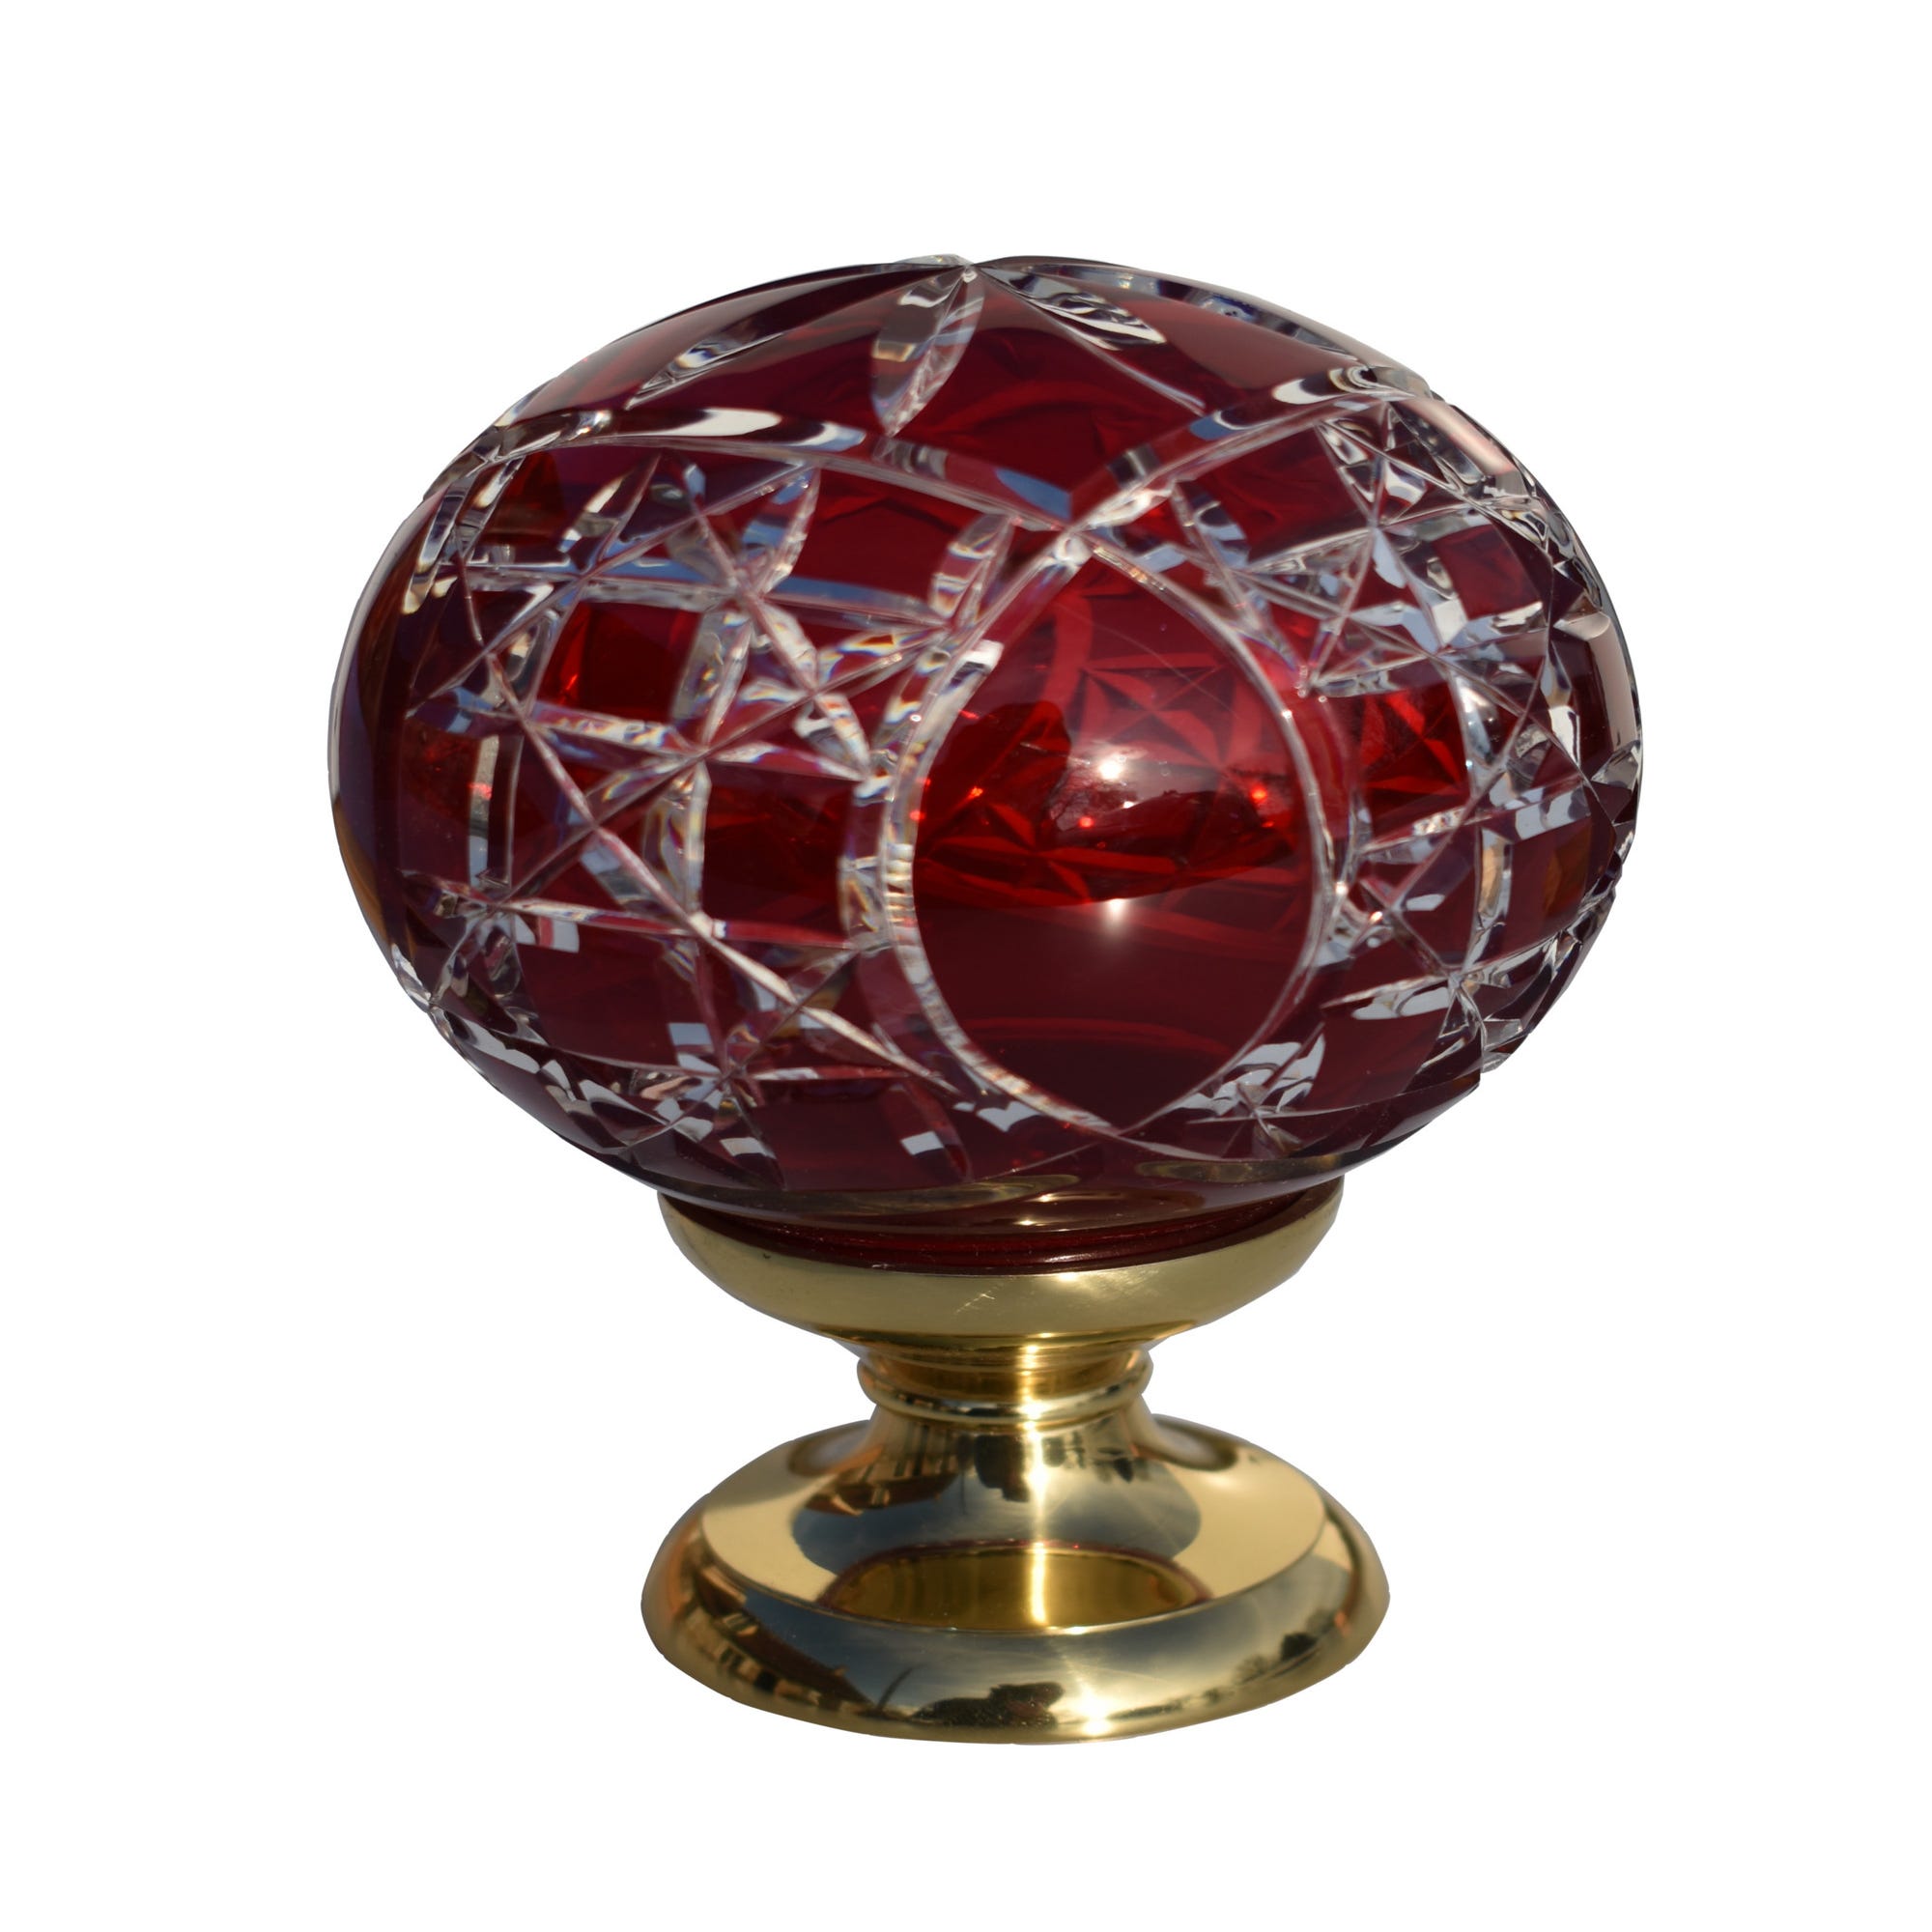 Hisredsun Grande boule de prisme en cristal avec un cordon rouge